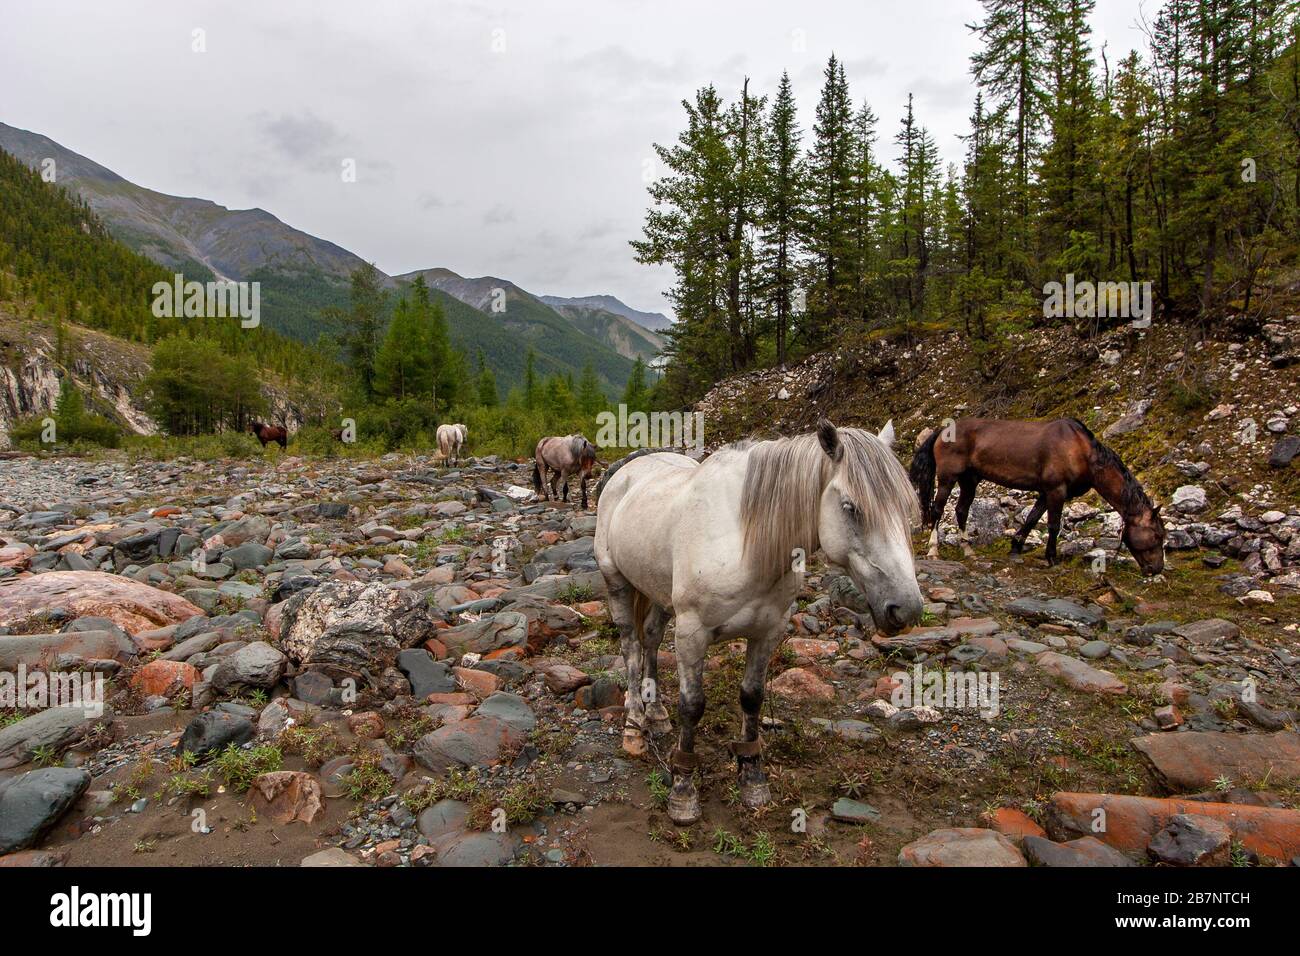 Weiße und braune Pferde weiden auf steinigen Böden in den Bergen. Die Beine der Pferde sind gefesselt. Wald und Bergketten in der Ferne Stockfoto